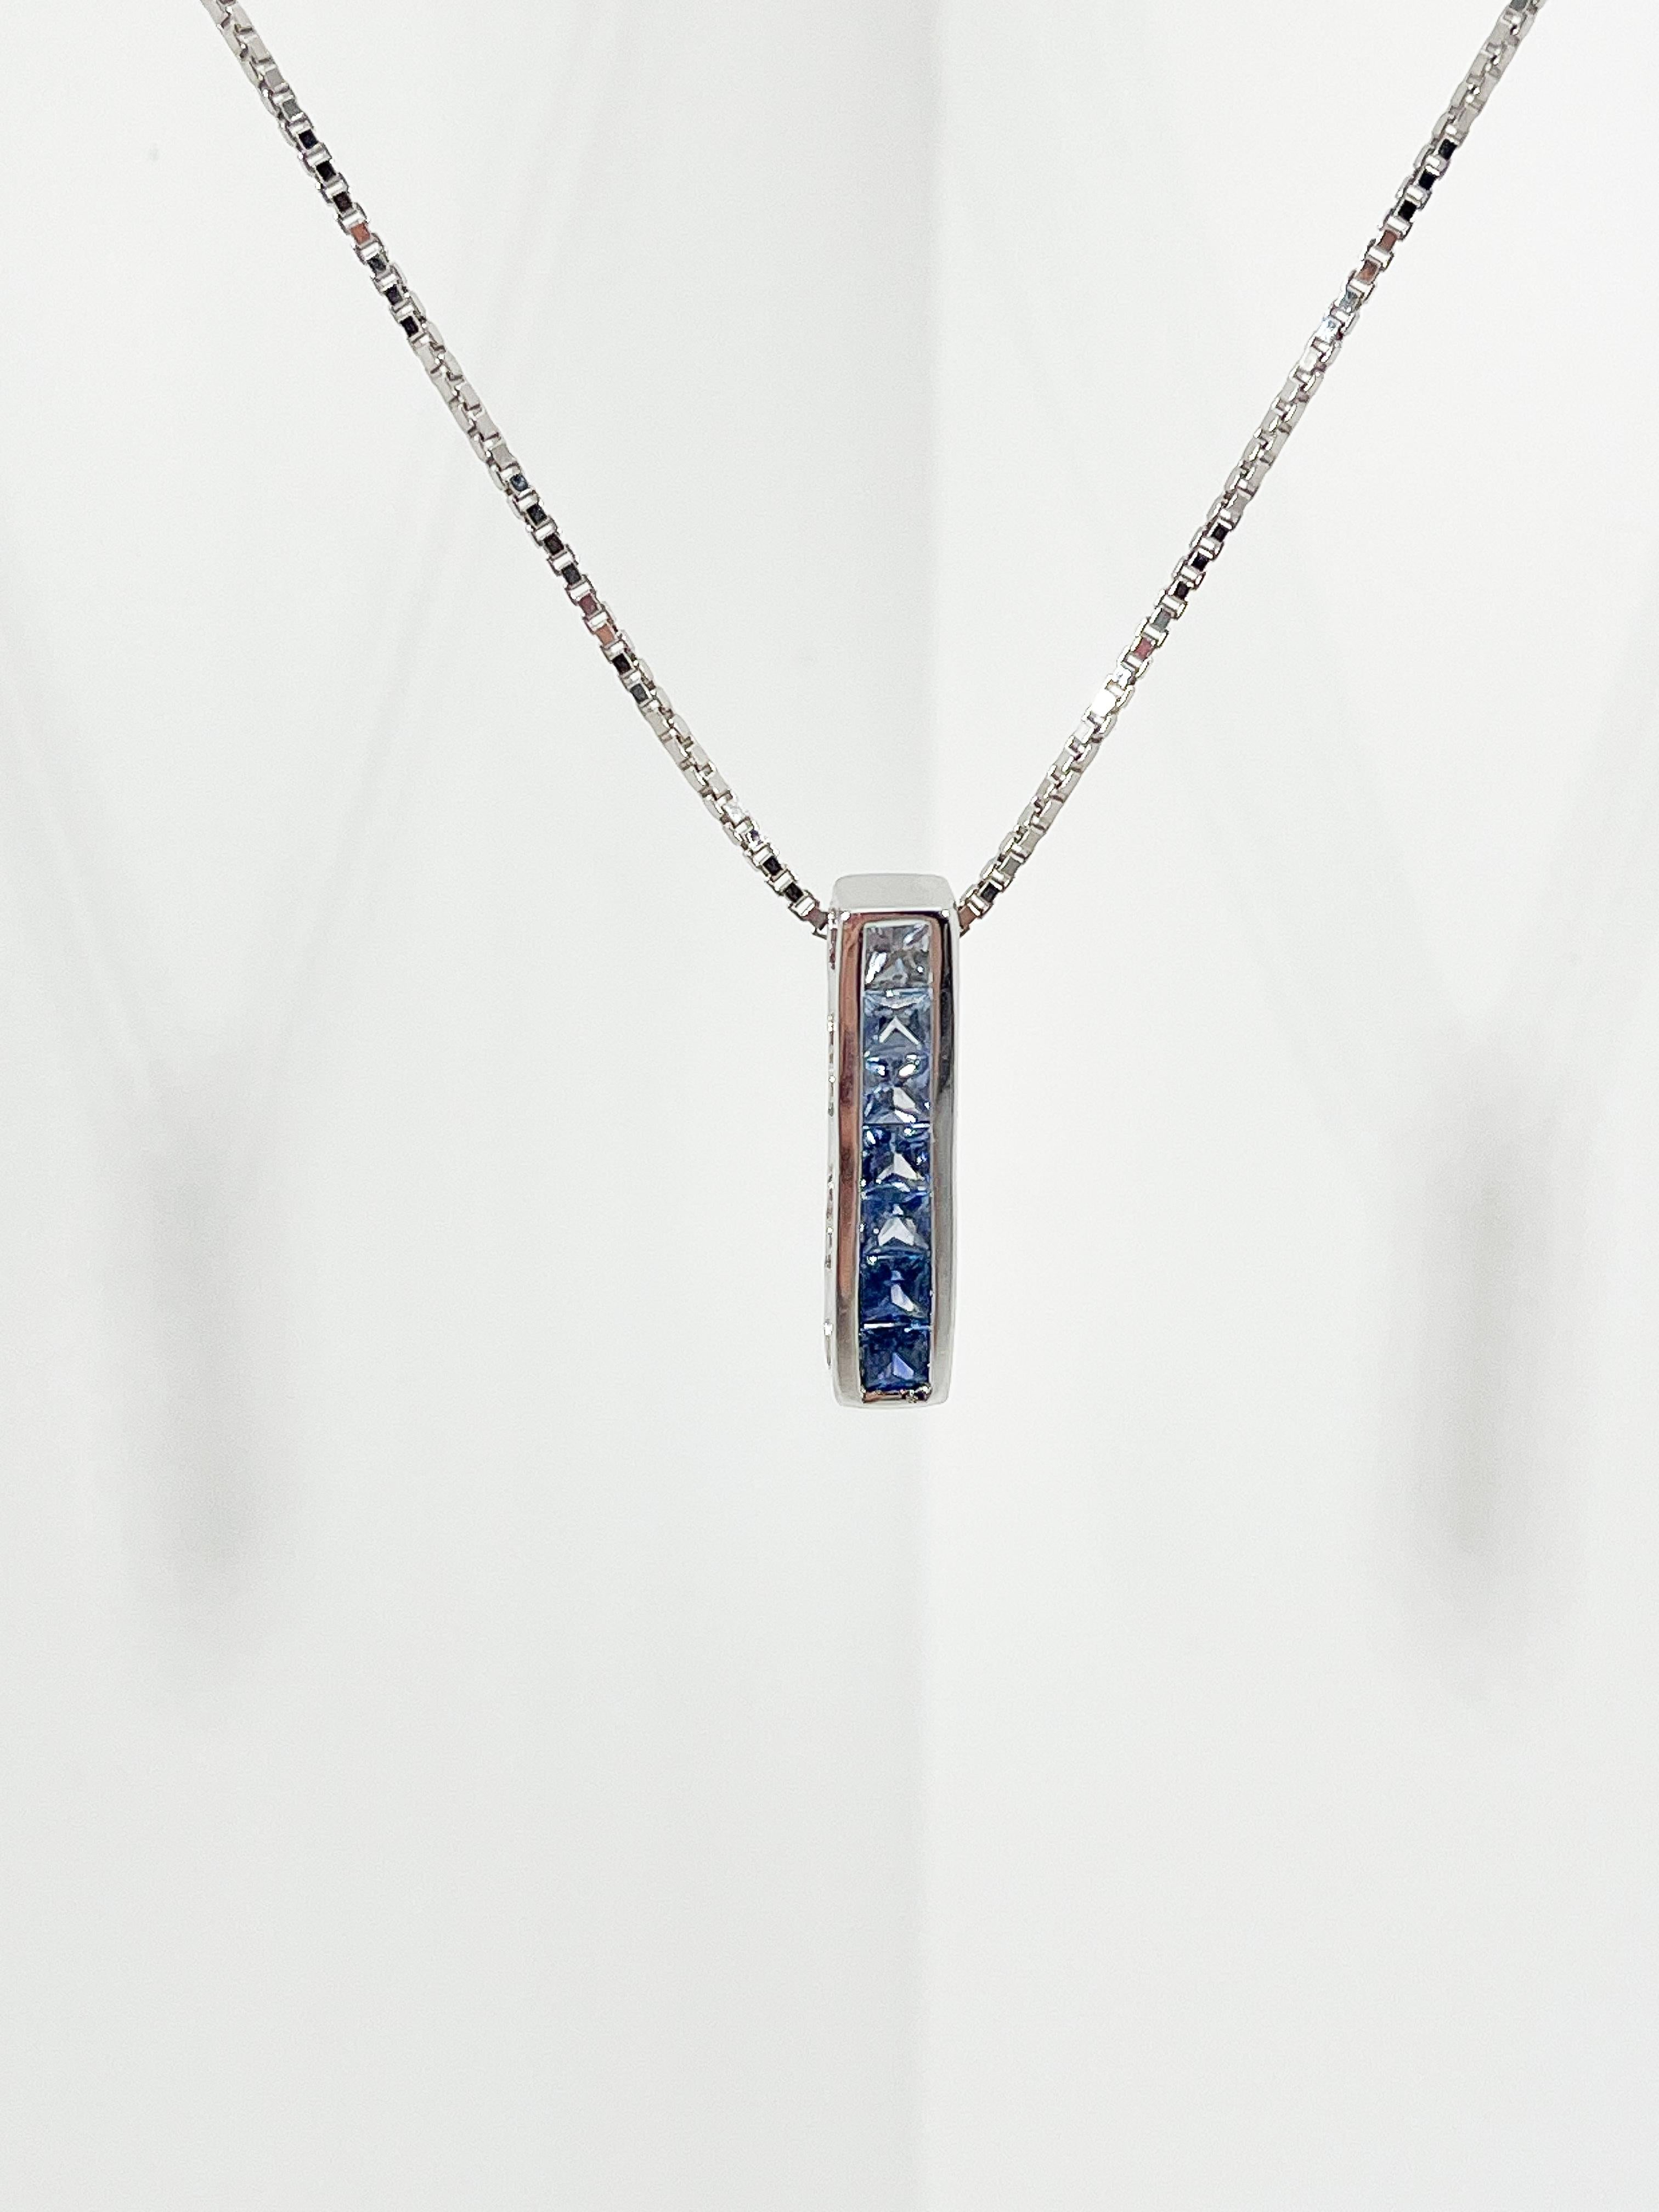 Princess Cut 14K White Gold Gradient Blue Sapphire Pendant Necklace For Sale